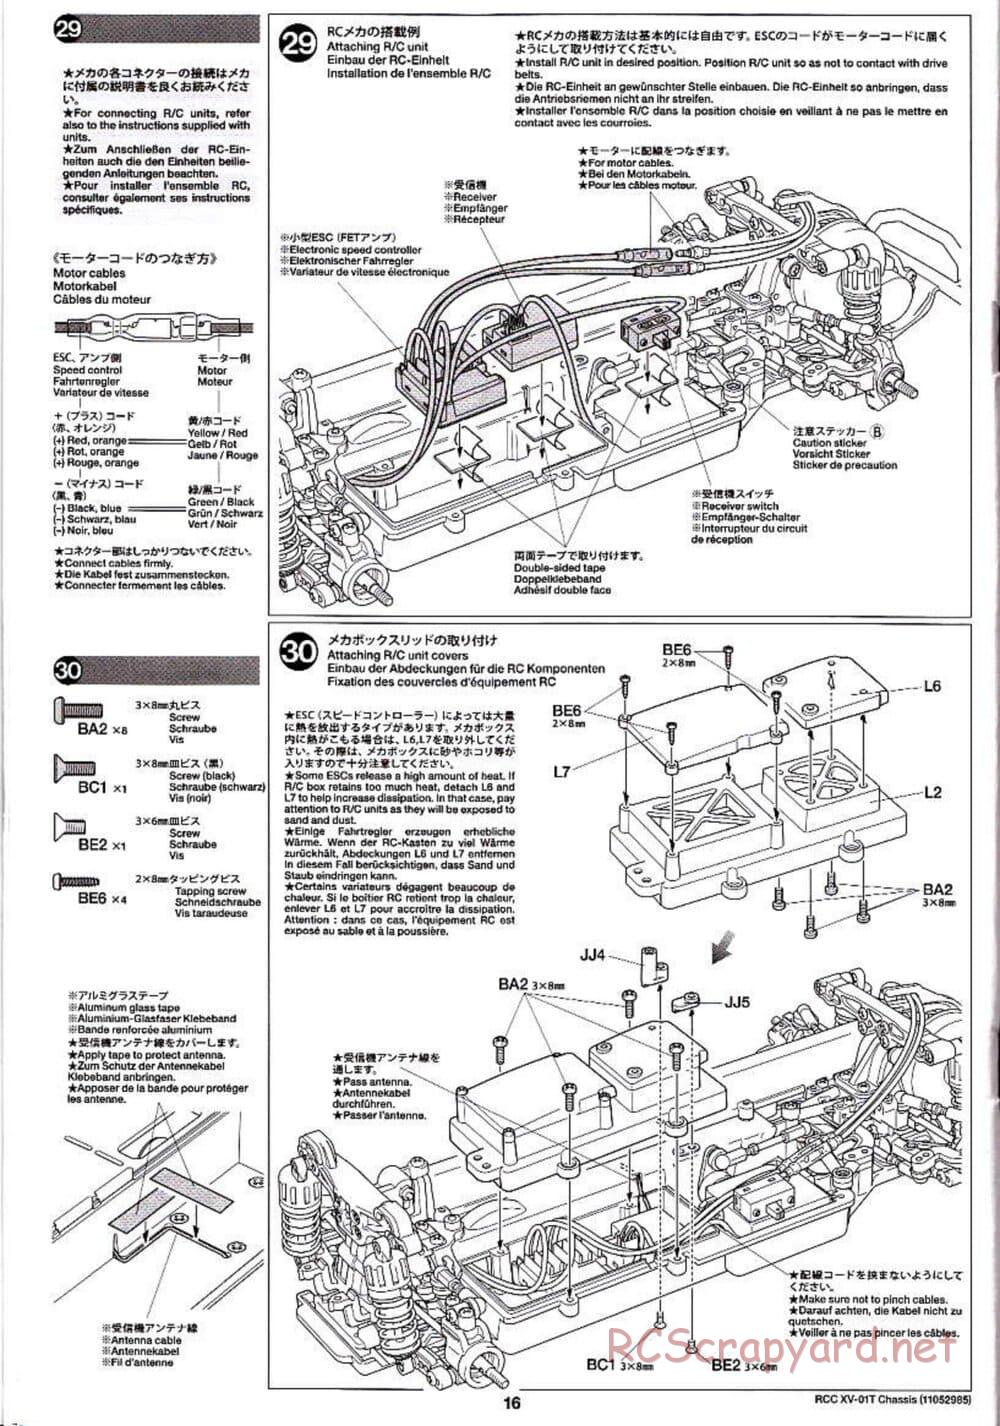 Tamiya - XV-01T Chassis - Manual - Page 16